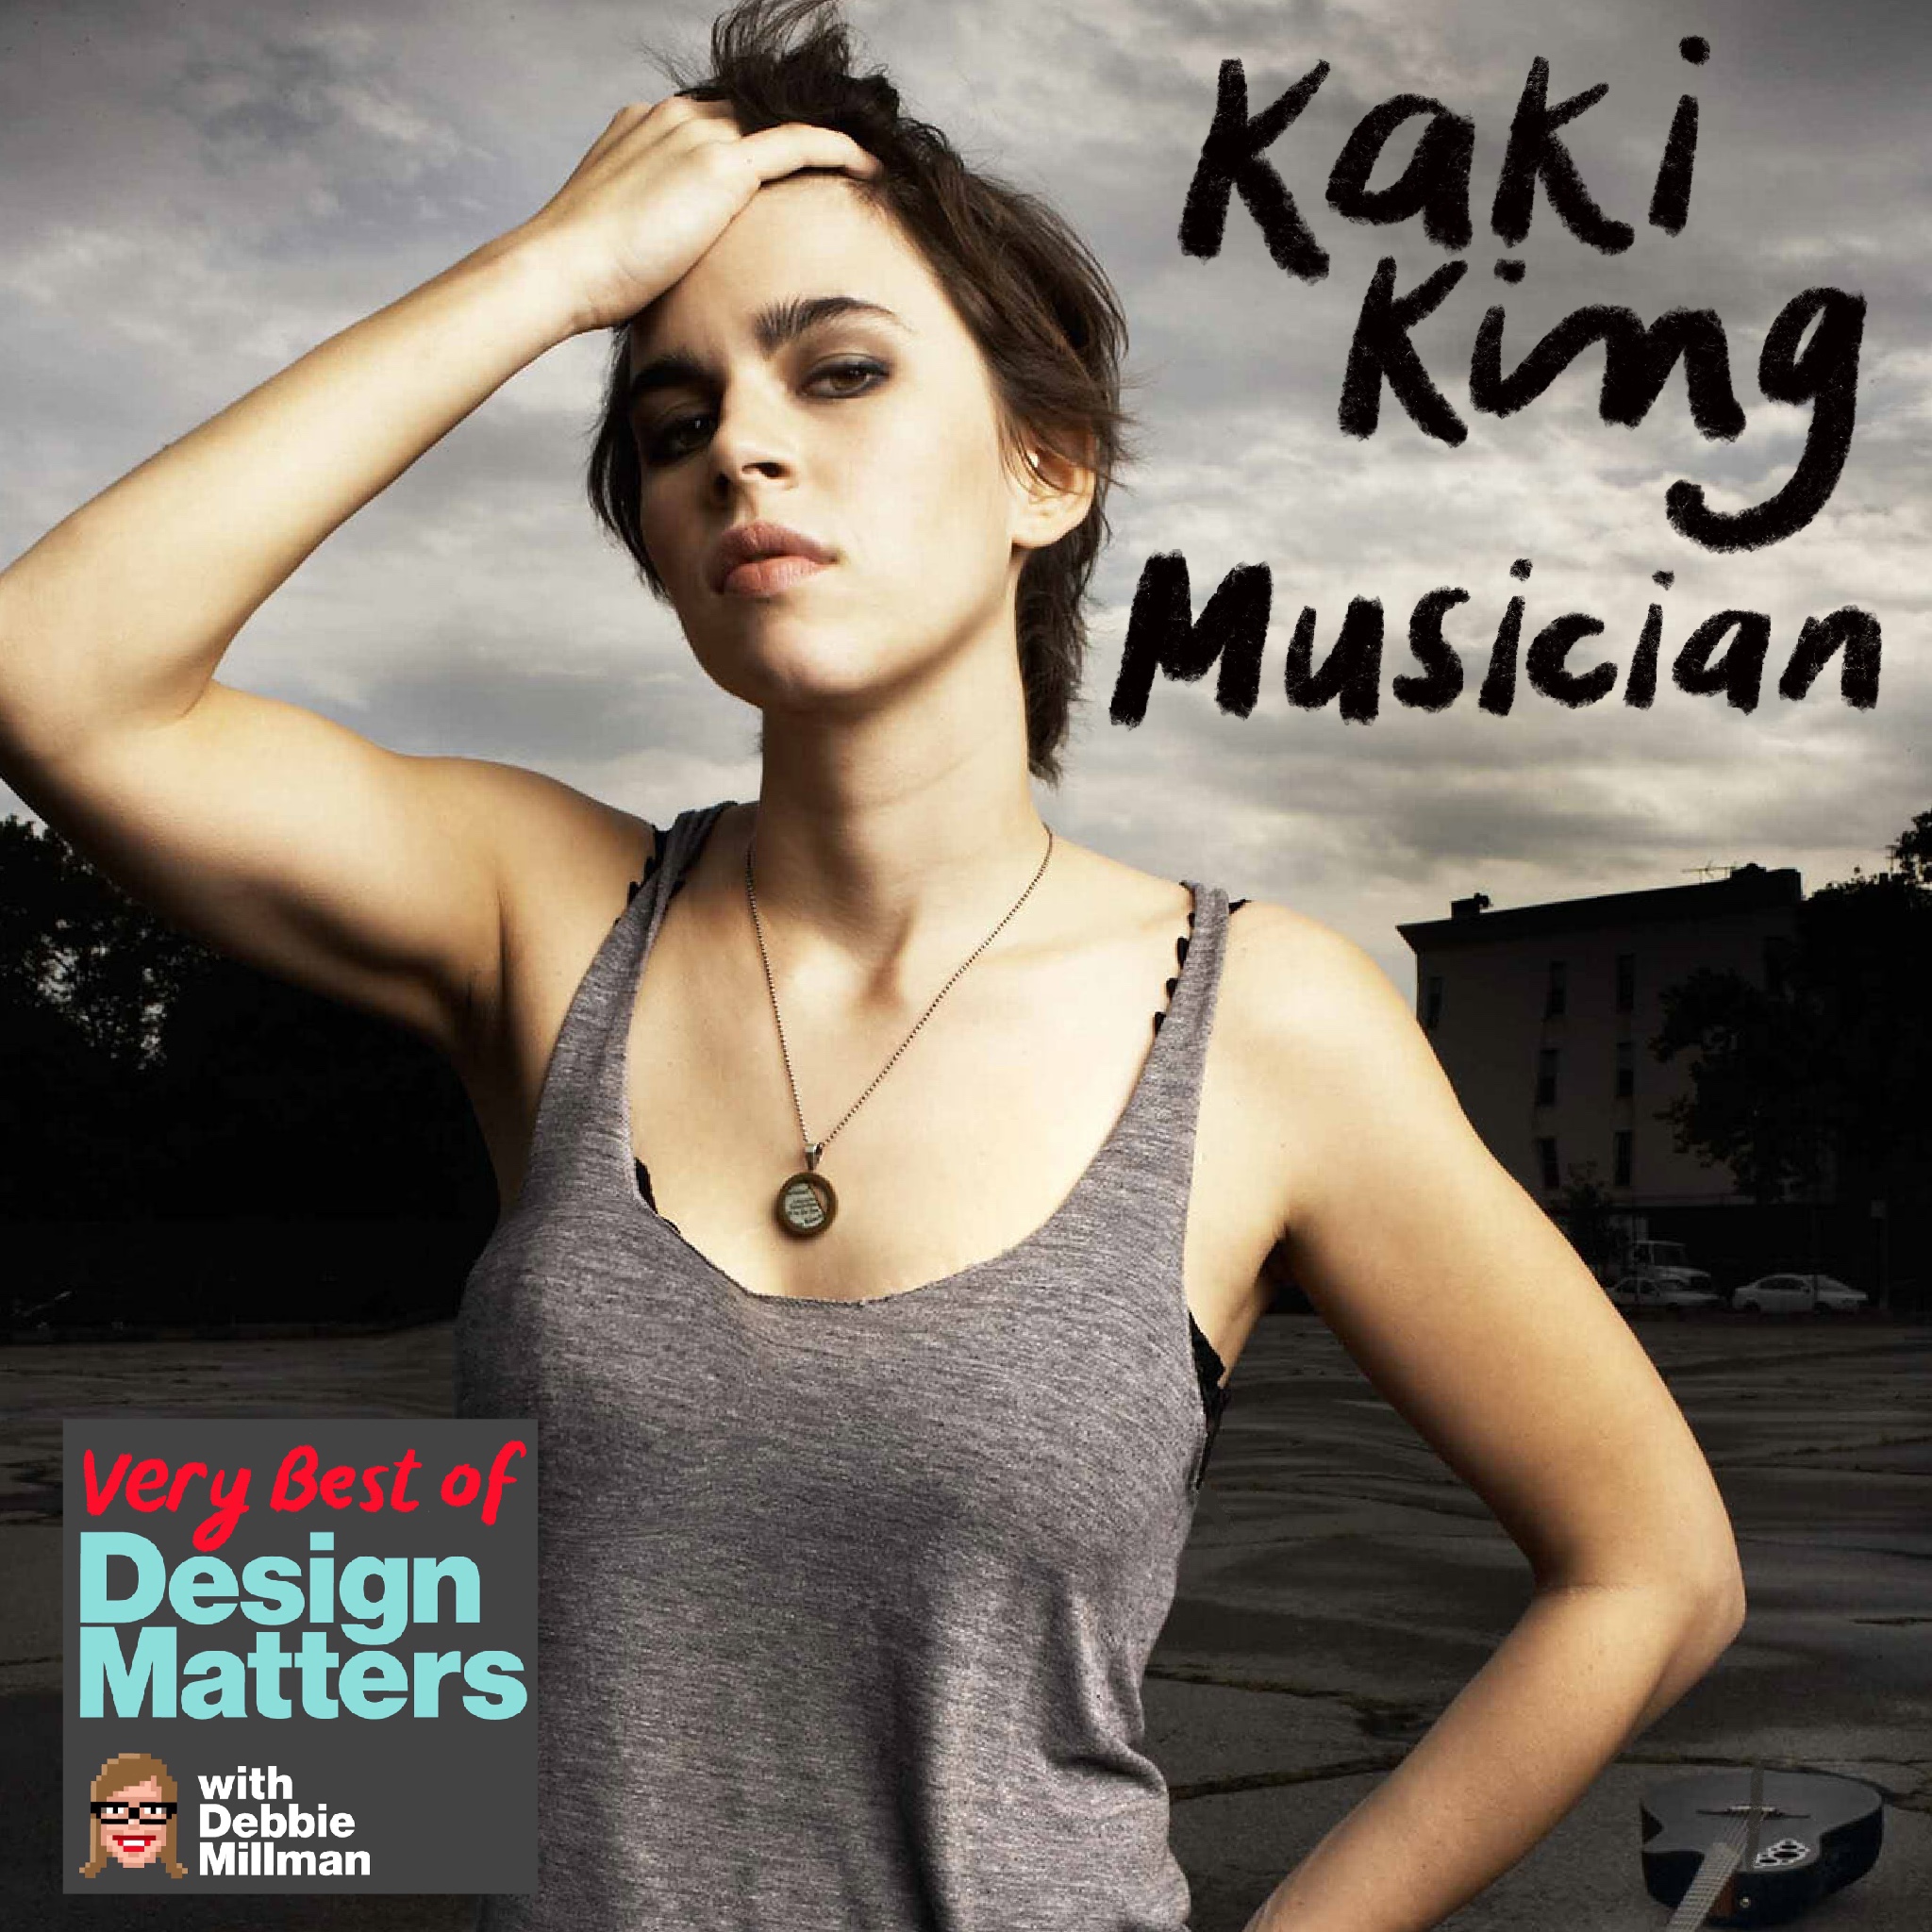 Best of Design Matters: Kaki King